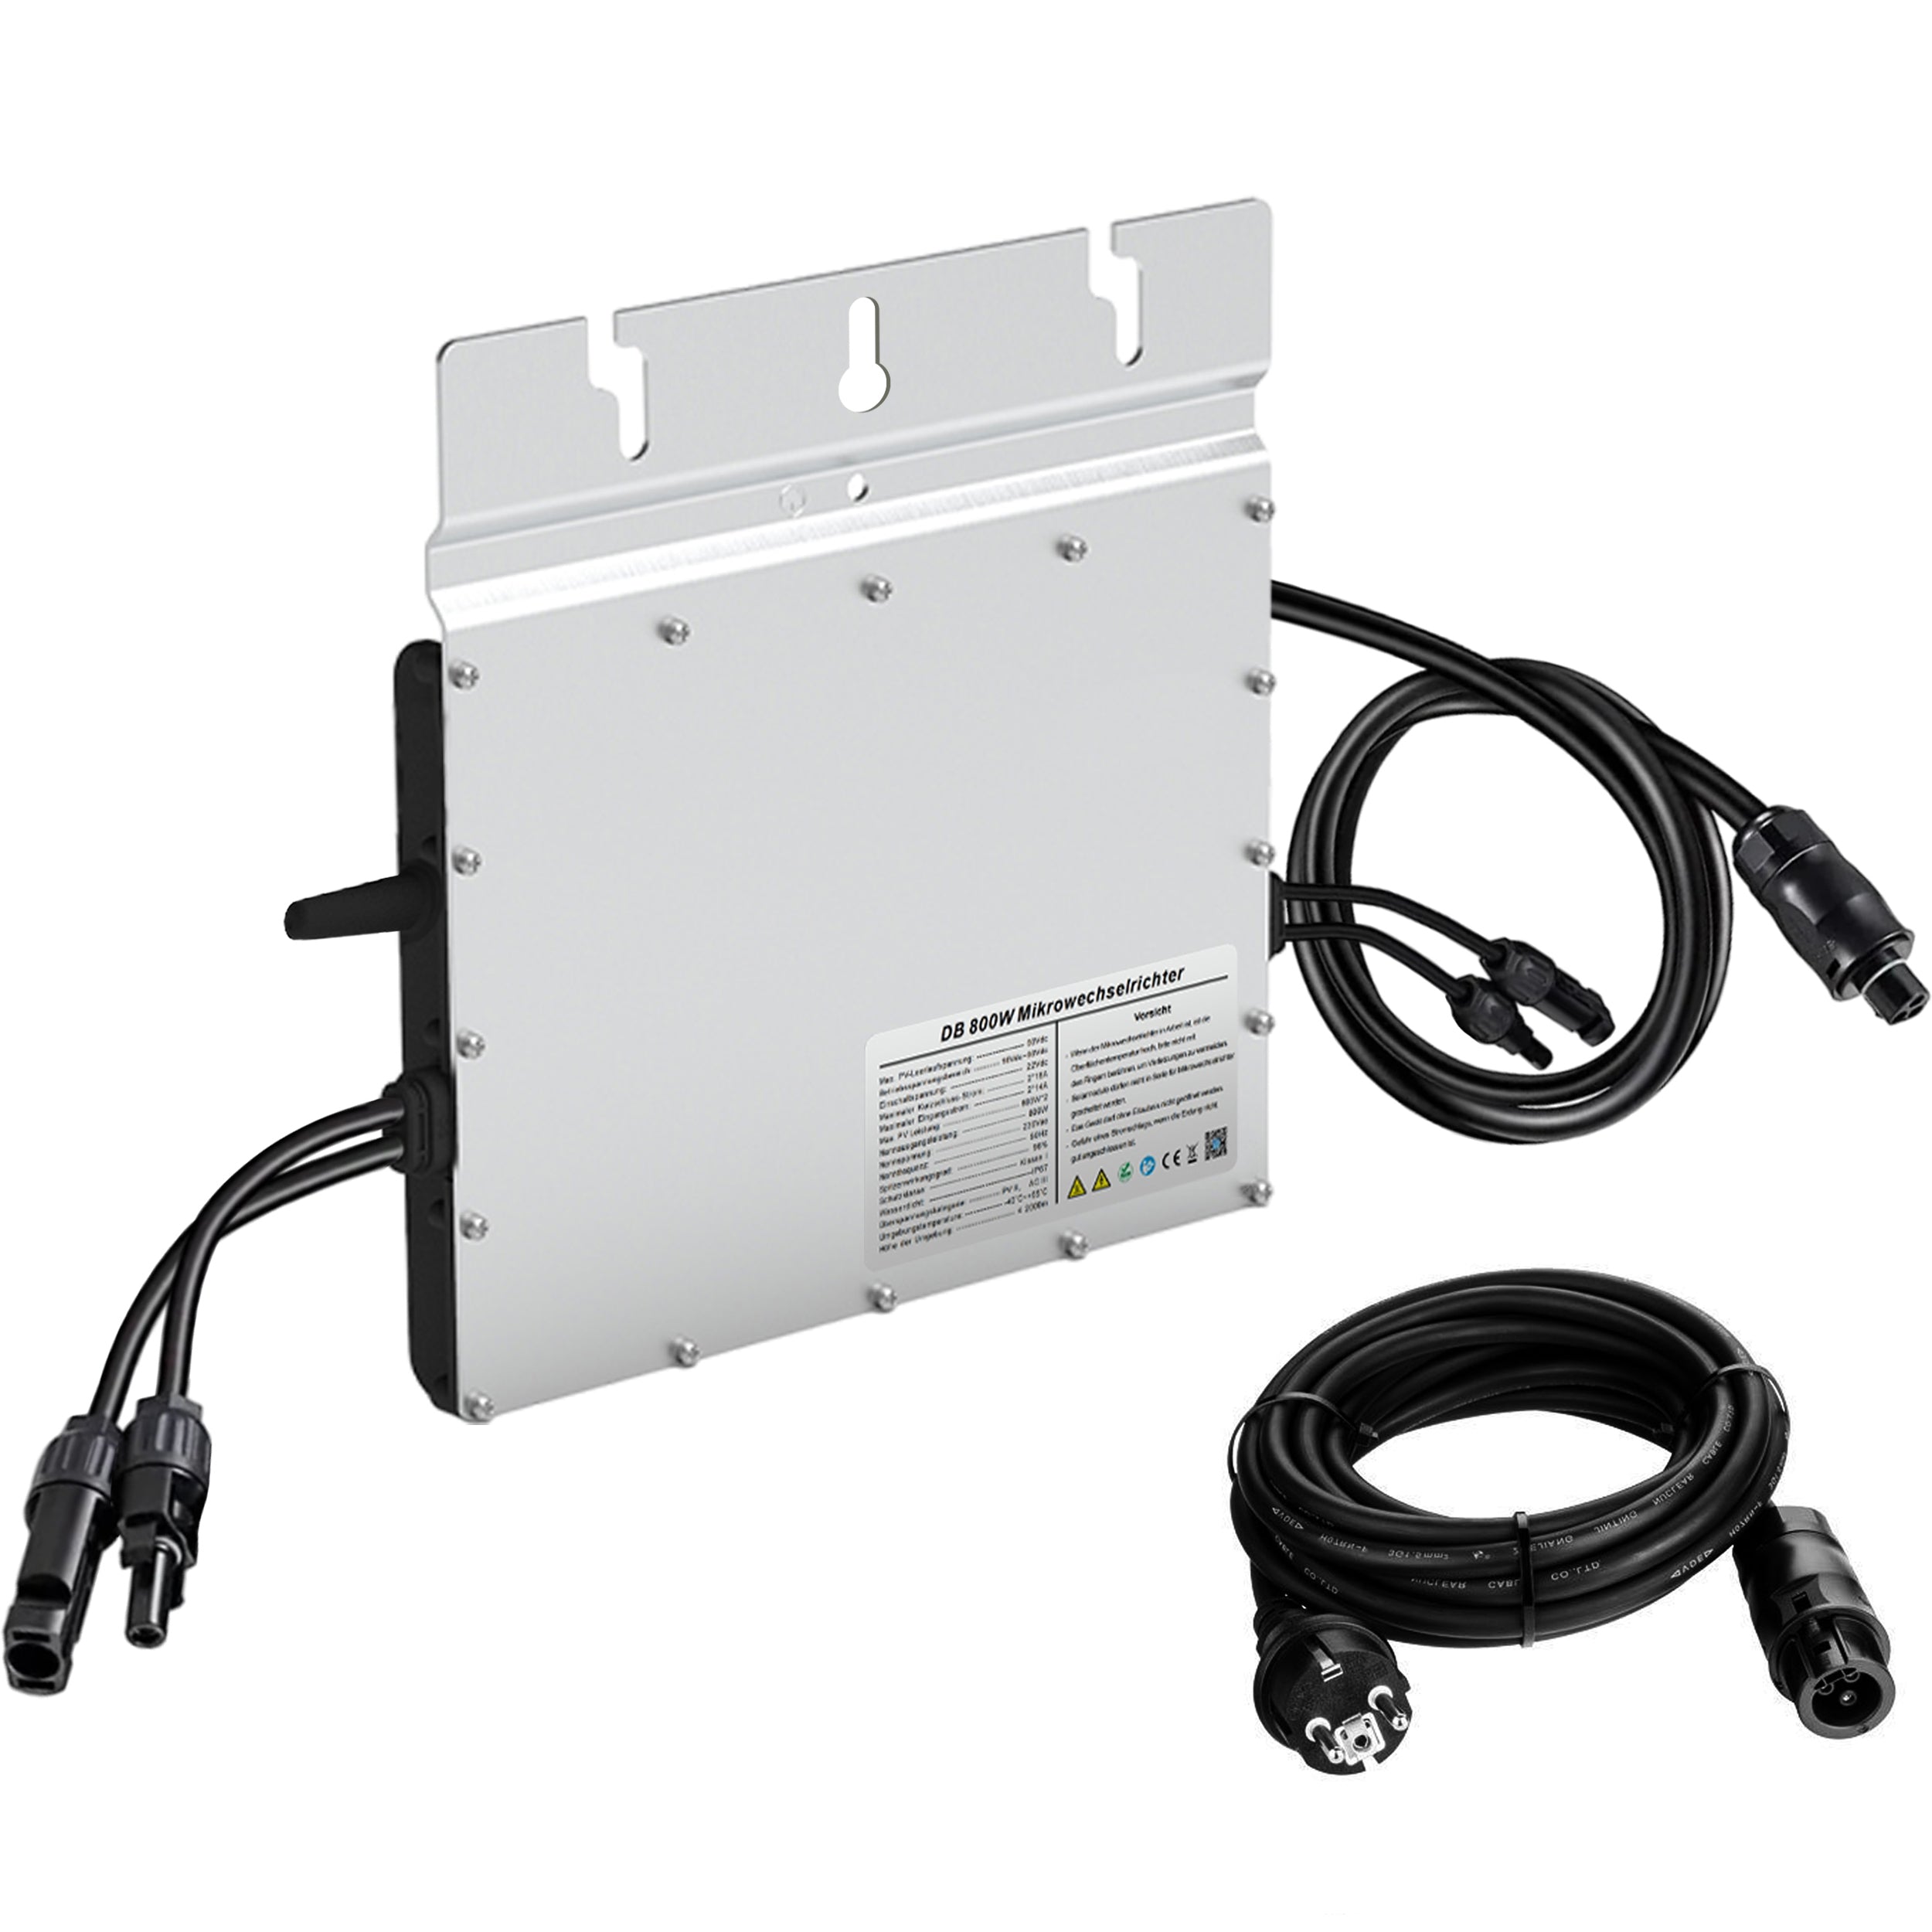 Micro Wechselrichter DB-800W mit intelligentem MPPT, Solarpanel Balkonkraftwerk Plug-and-Play Anschluss, Kühltechnologie & App-Steuerung